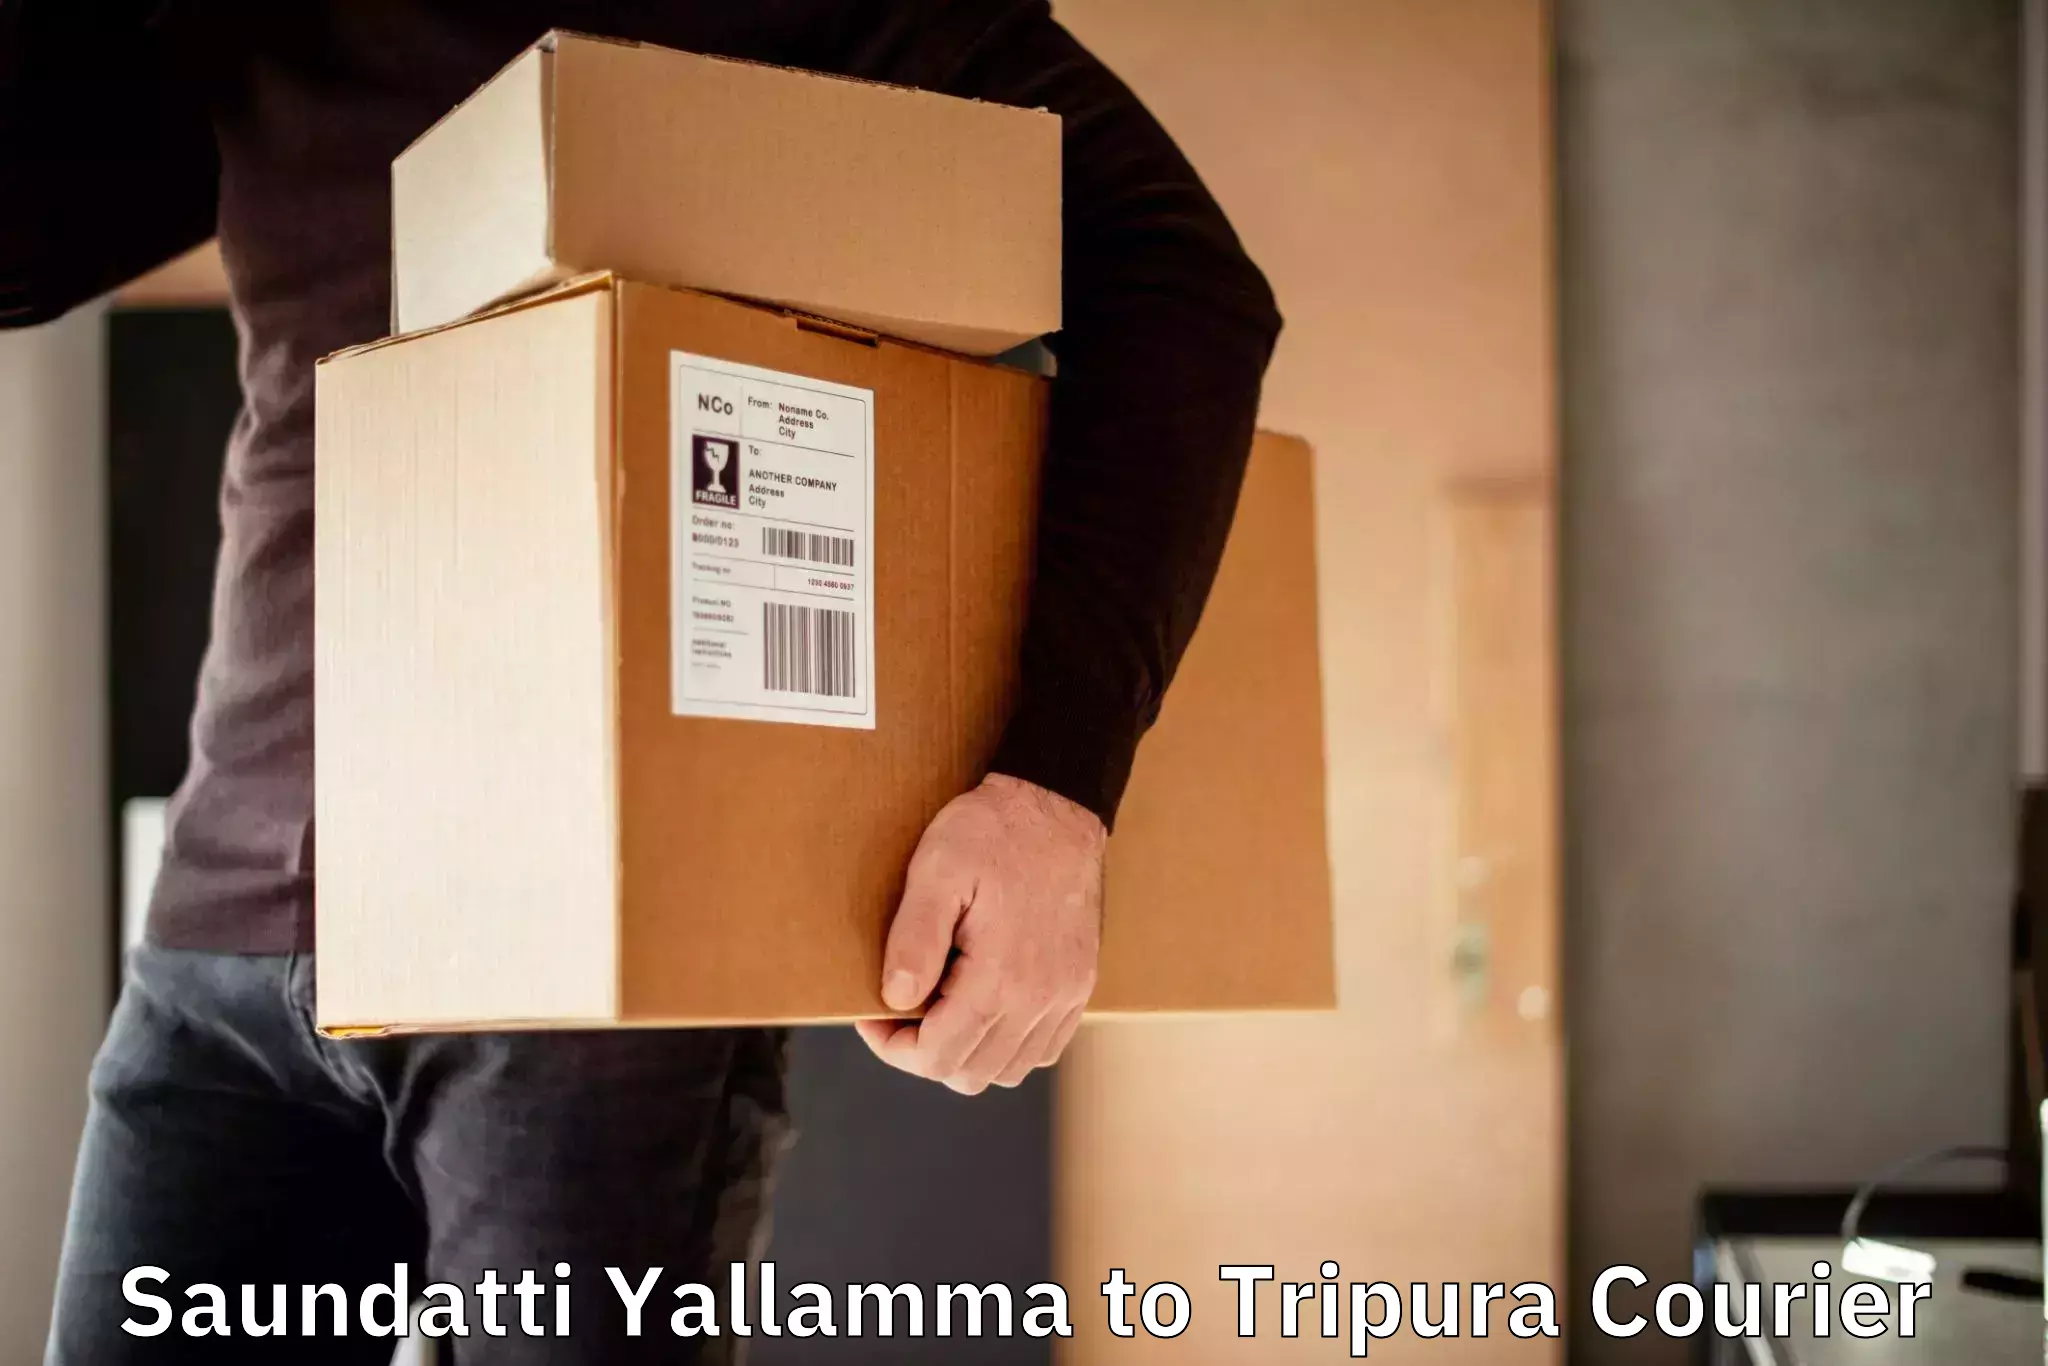 Reliable courier service Saundatti Yallamma to North Tripura